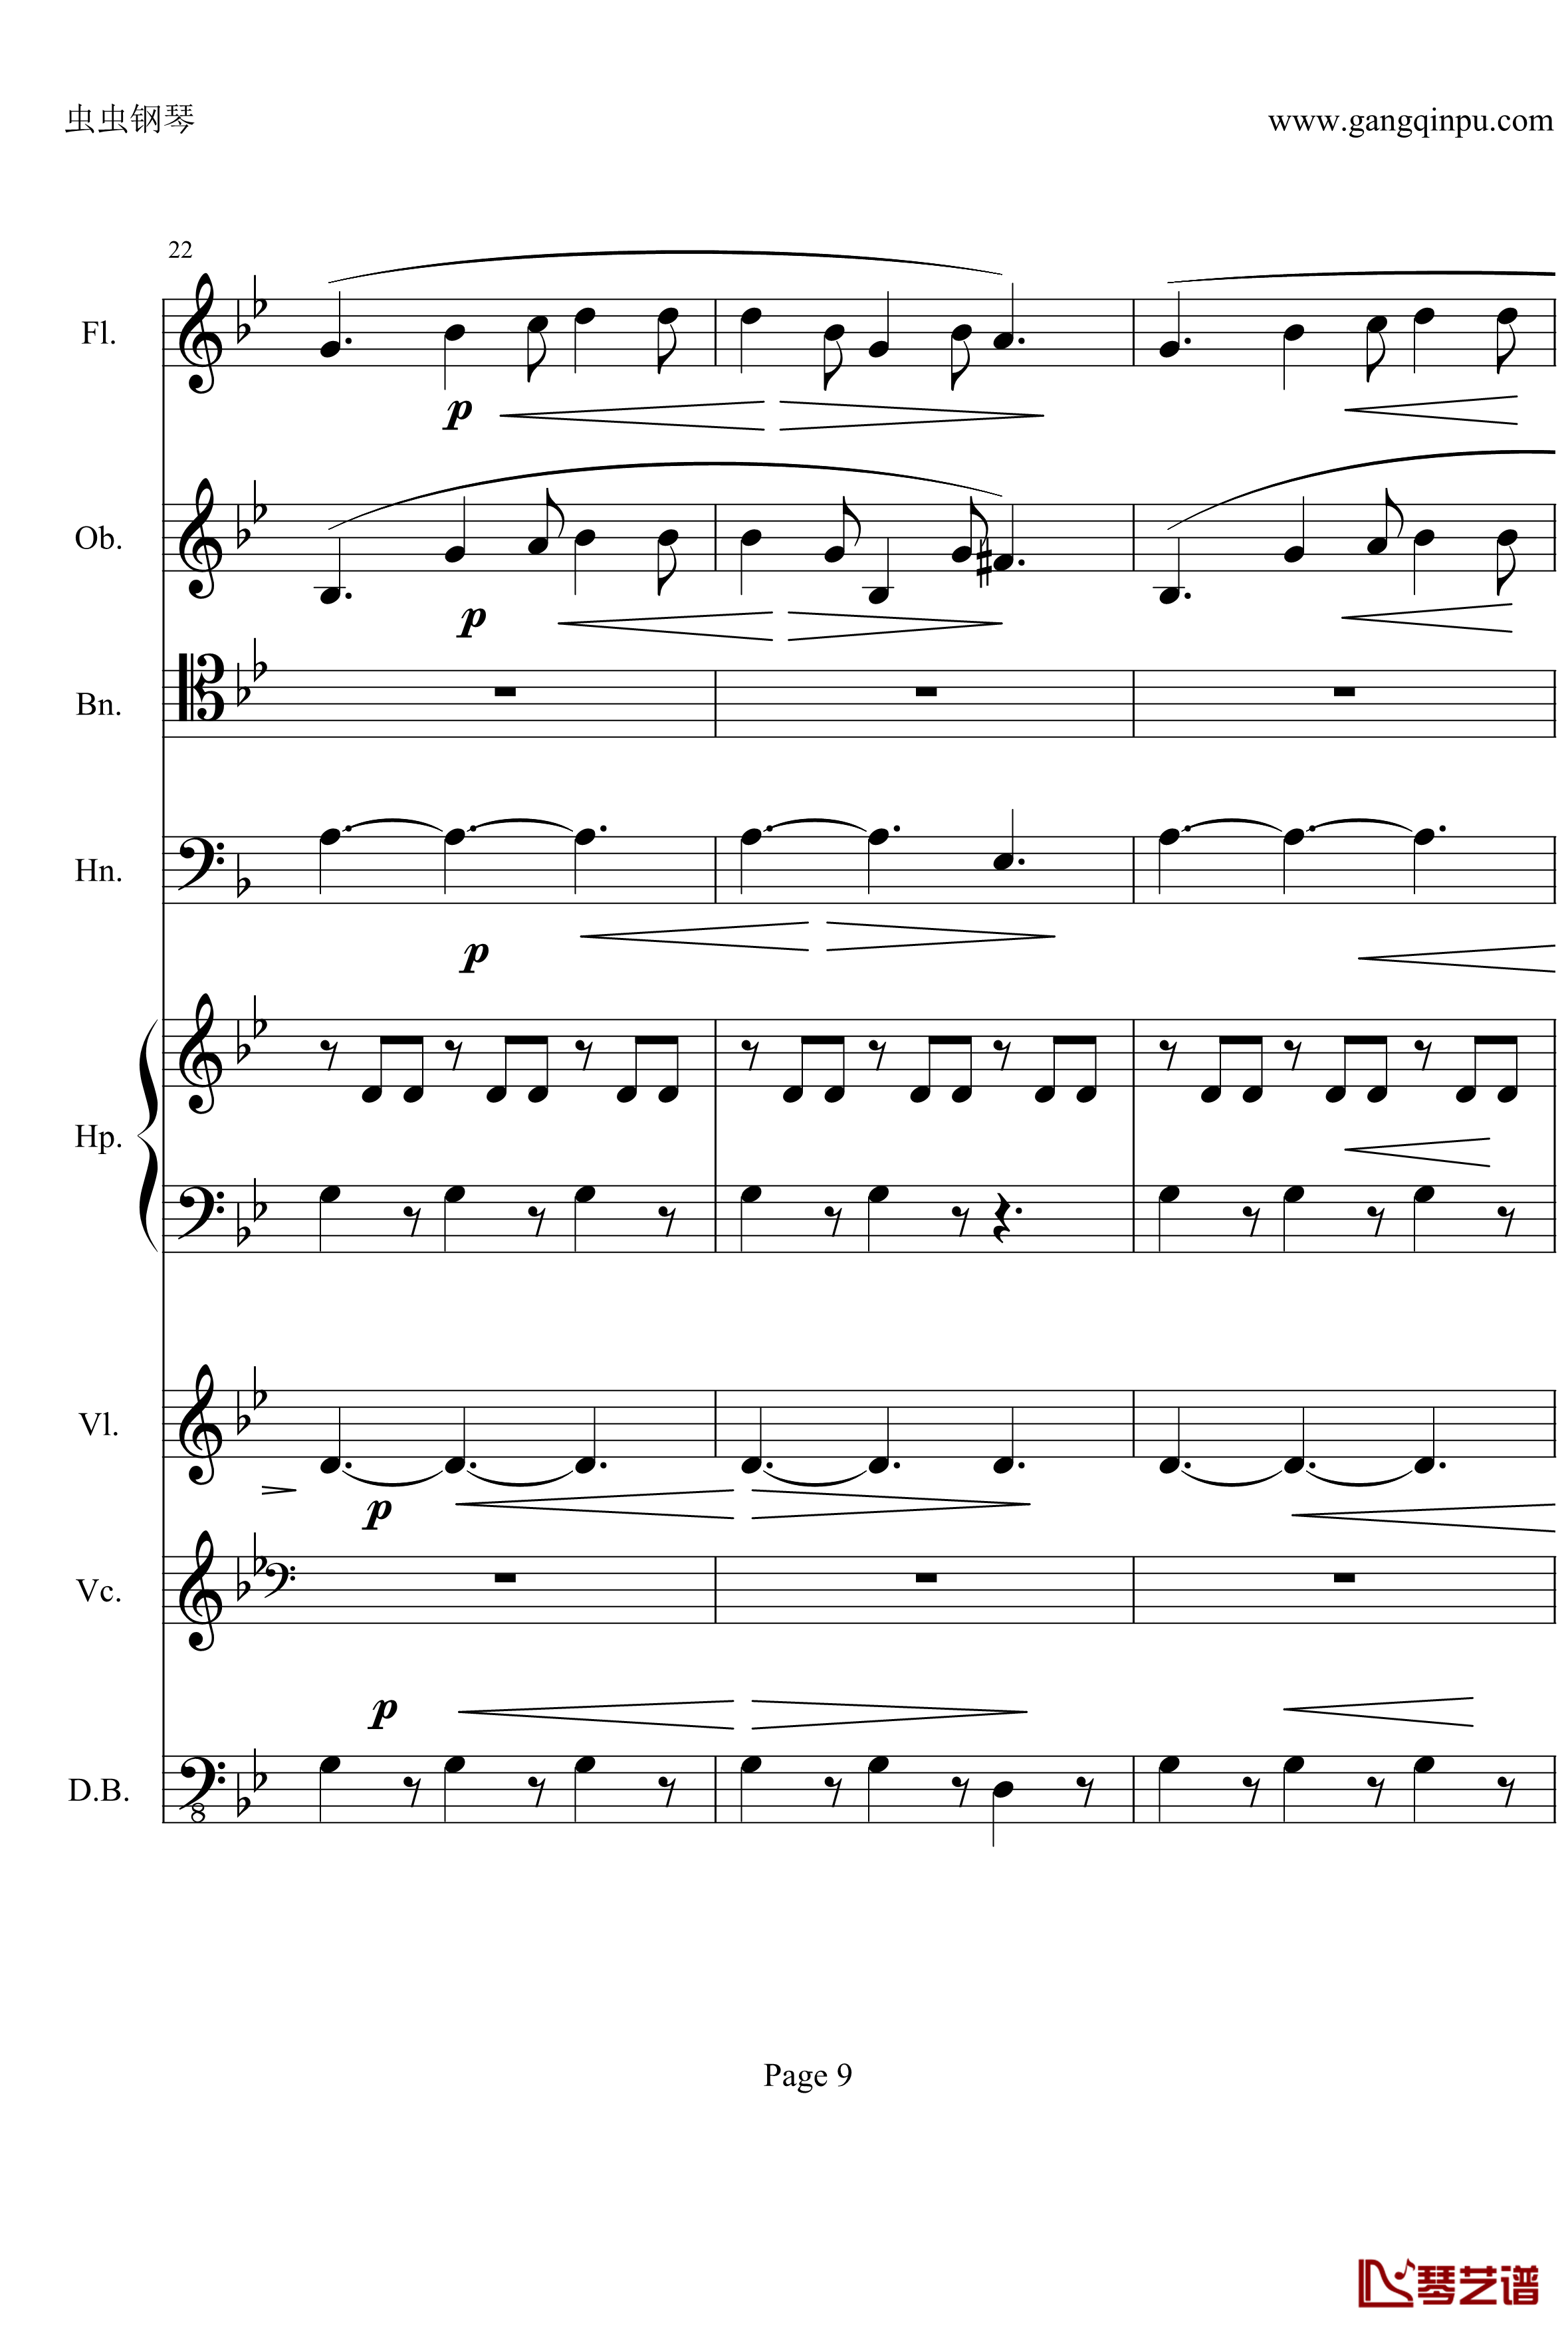 奏鸣曲之交响钢琴谱-第25首-Ⅱ-贝多芬-beethoven9